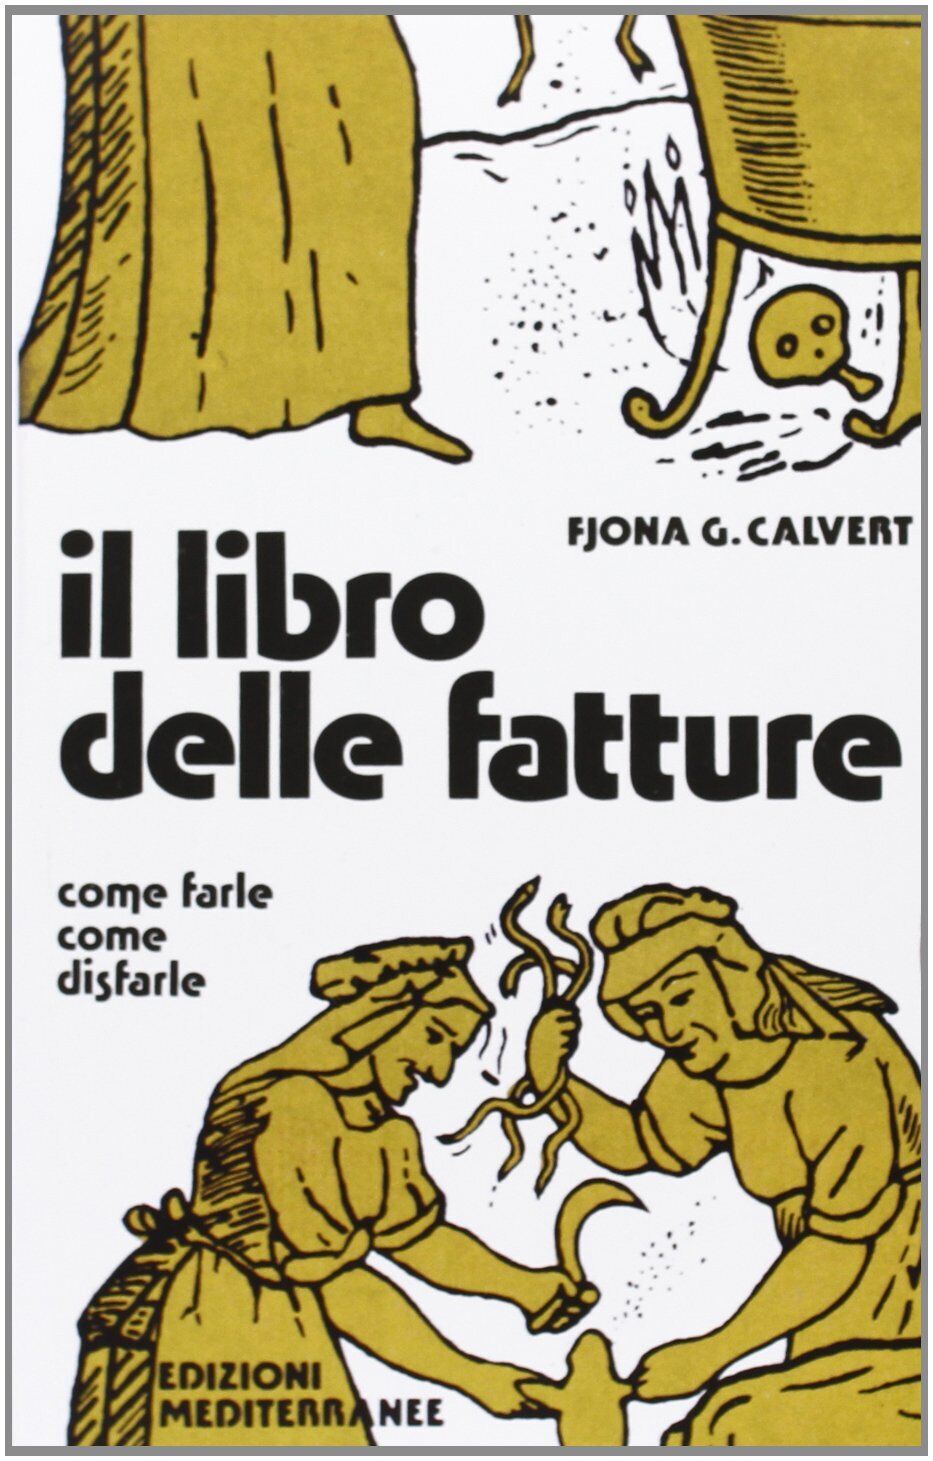 Il libro delle fatture - Fjona Calvert - Edizioni Mediterranee, 1983 libro usato